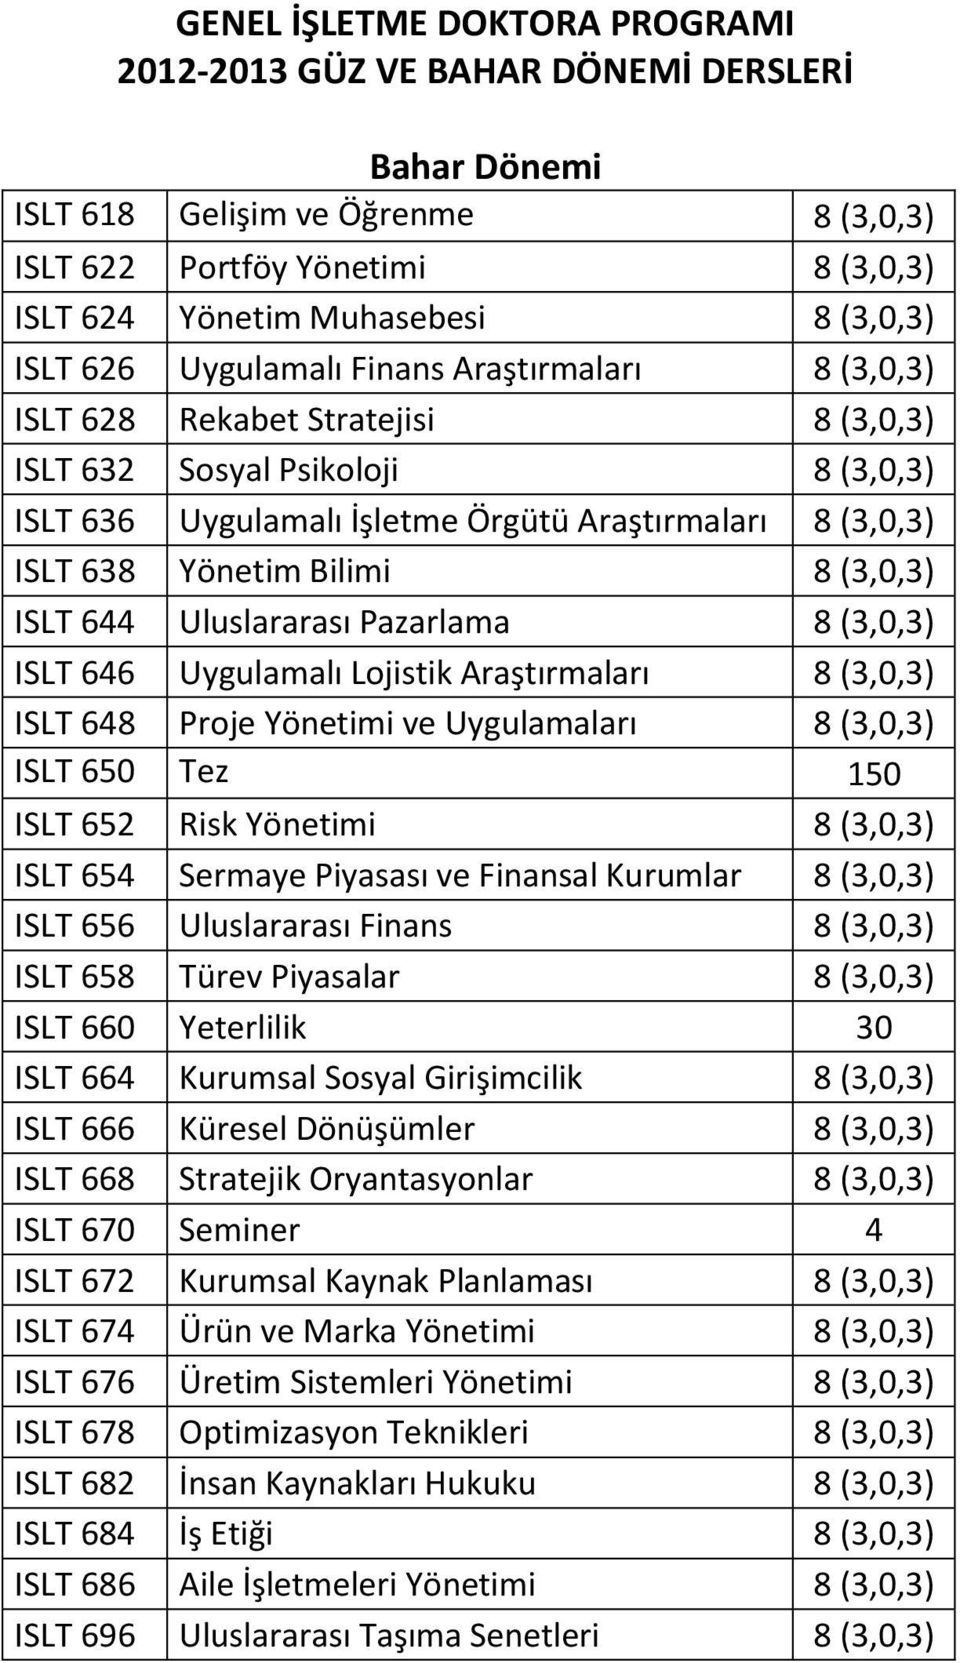 Bilimi 8 (3,0,3) ISLT 644 Uluslararası Pazarlama 8 (3,0,3) ISLT 646 Uygulamalı Lojistik Araştırmaları 8 (3,0,3) ISLT 648 Proje Yönetimi ve Uygulamaları 8 (3,0,3) ISLT 650 Tez 150 ISLT 652 Risk